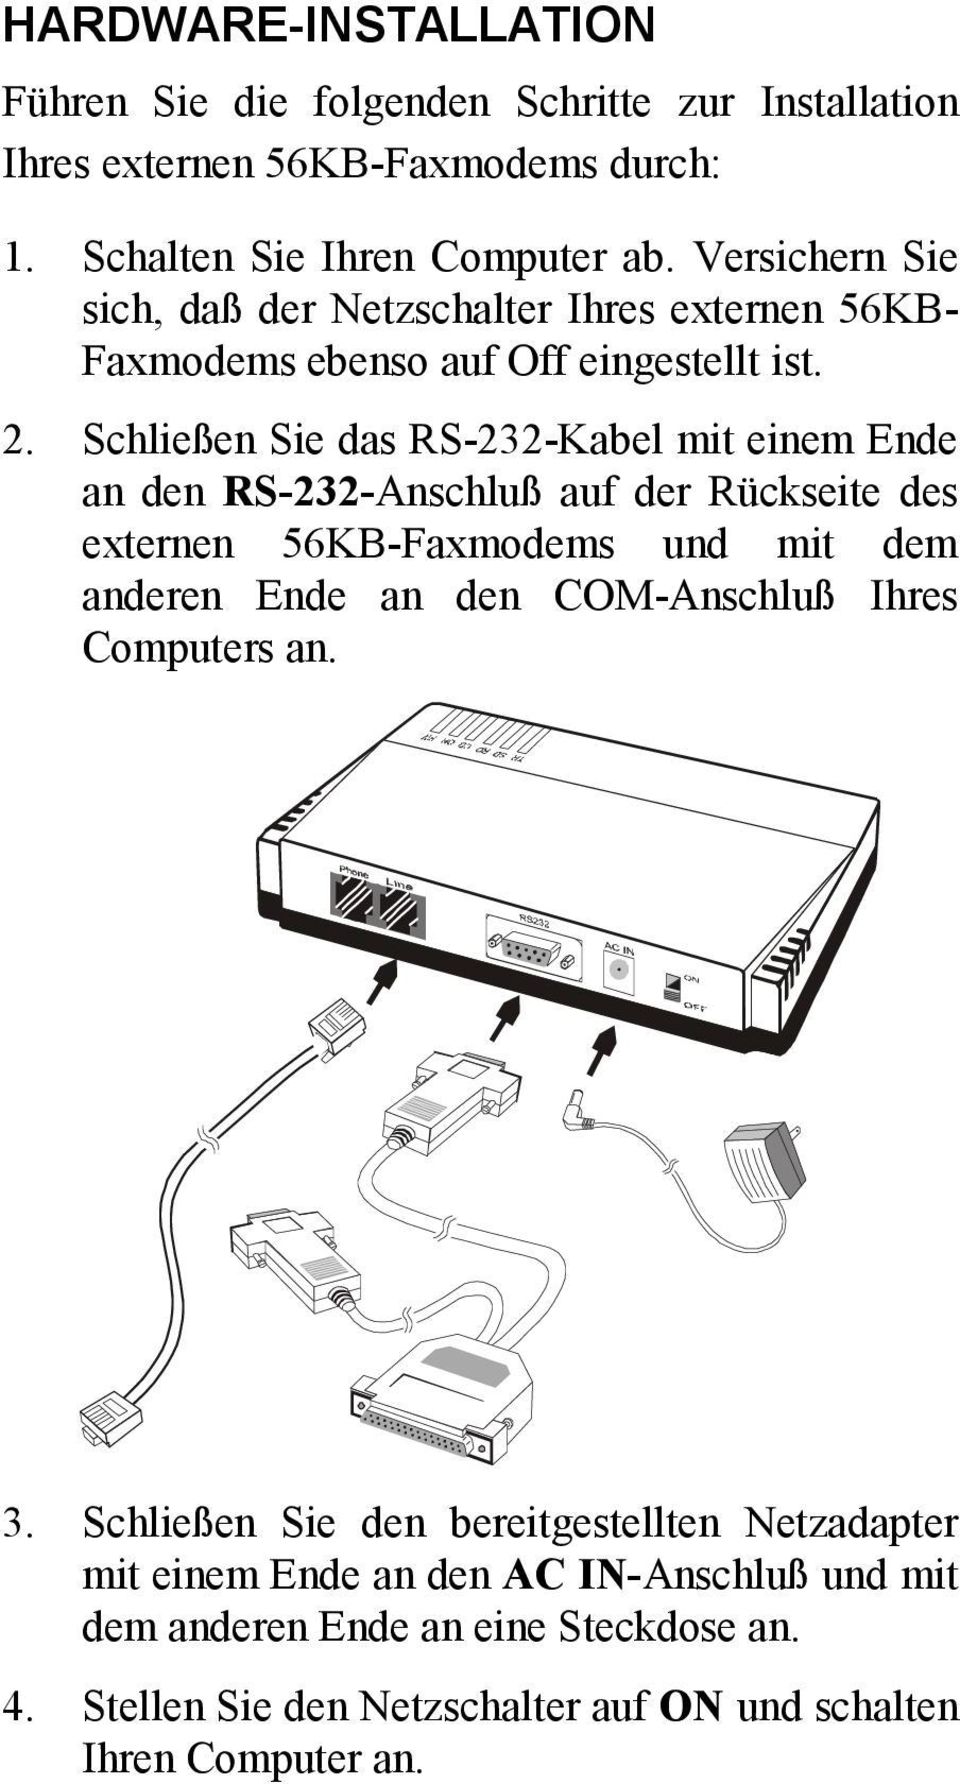 Schließen Sie das RS-232-Kabel mit einem Ende an den RS-232-Anschluß auf der Rückseite des externen 56KB-Faxmodems und mit dem anderen Ende an den COM-Anschluß